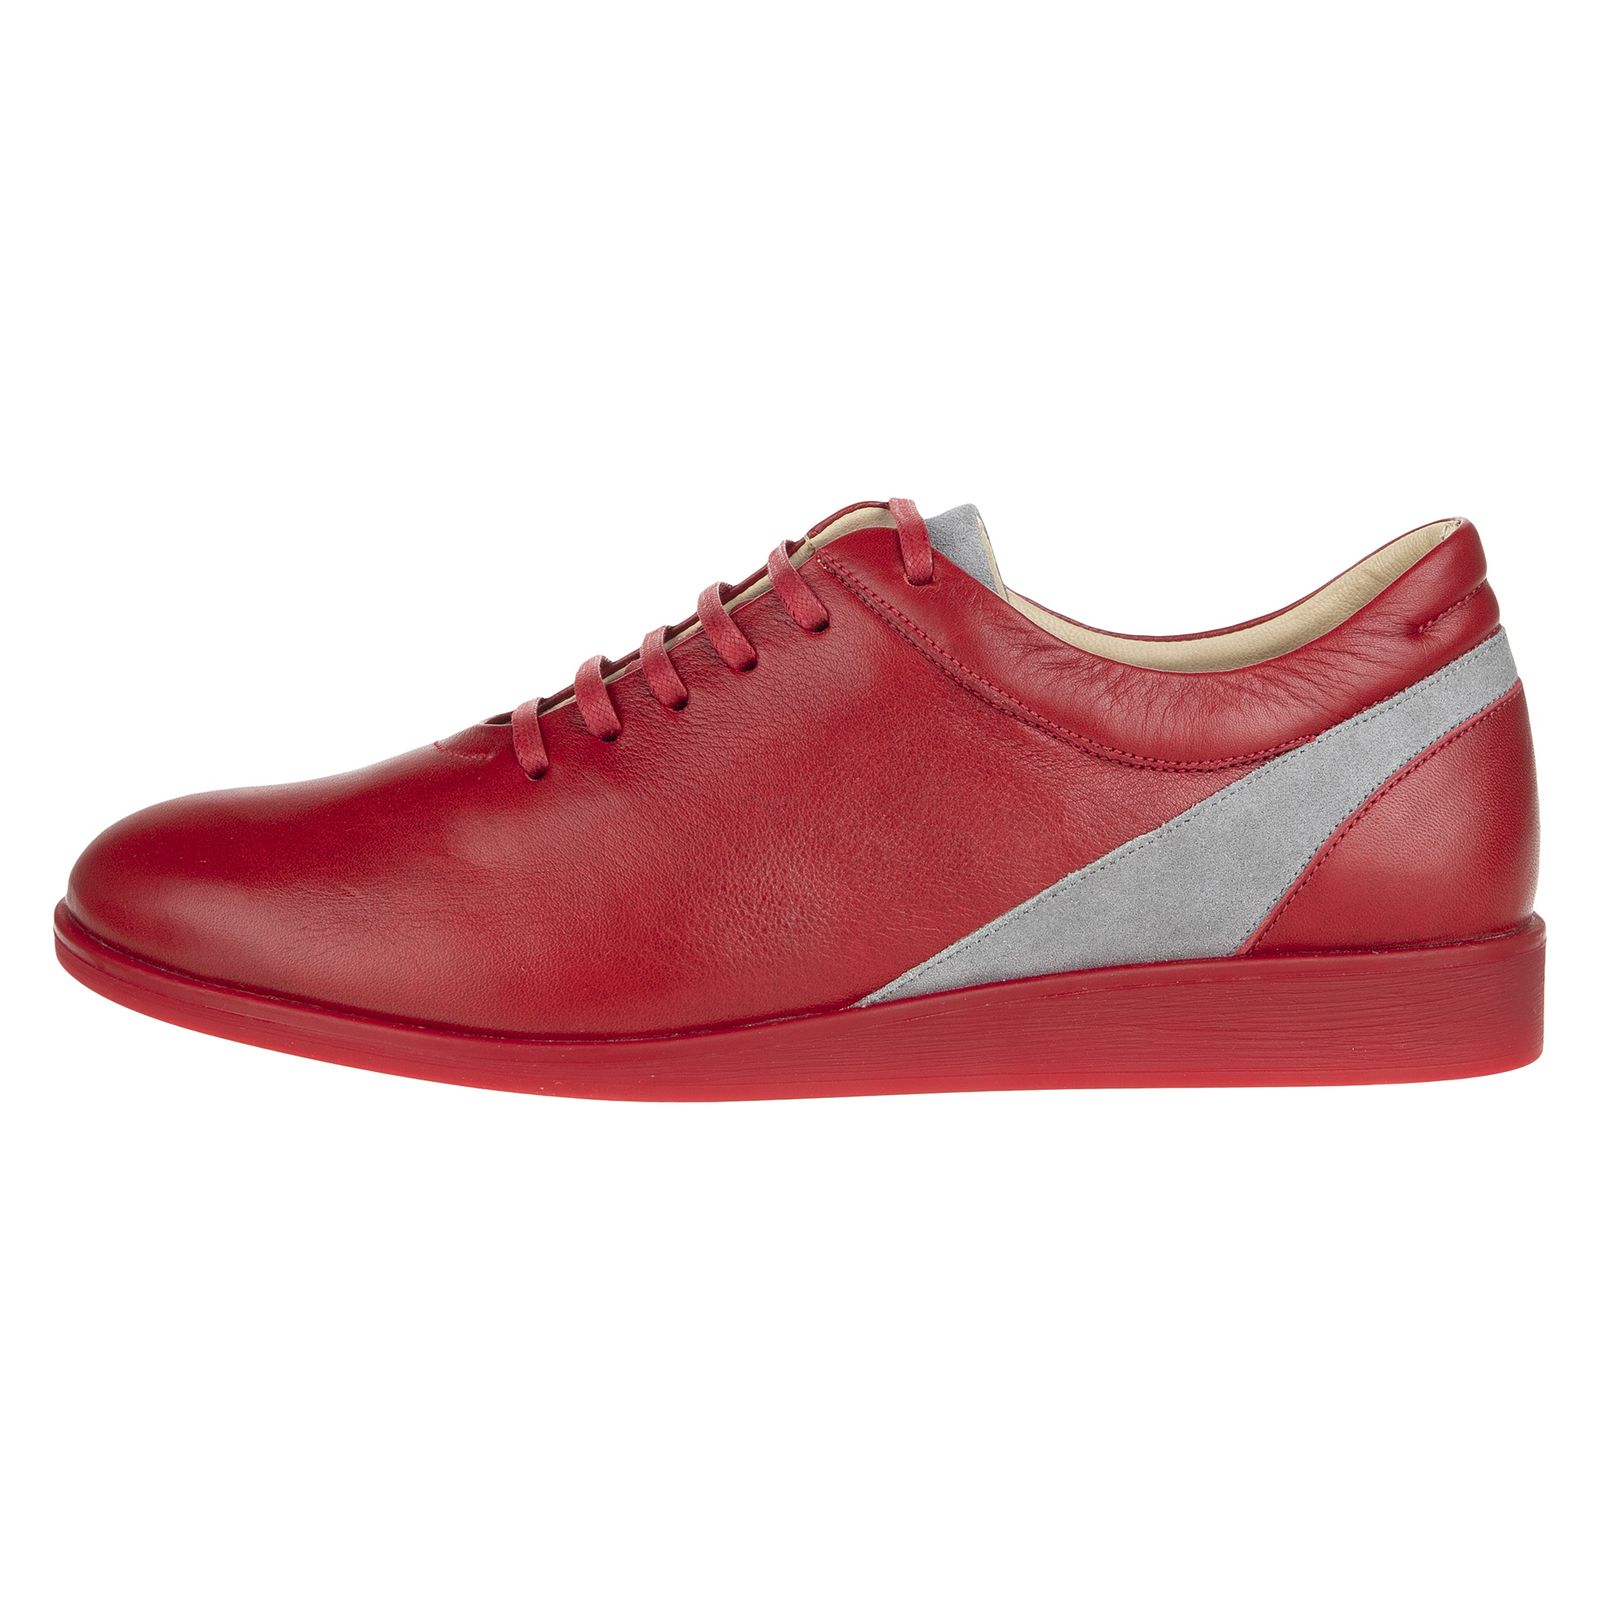 کفش روزمره زنانه برتونیکس مدل 960-24 - قرمز - 1